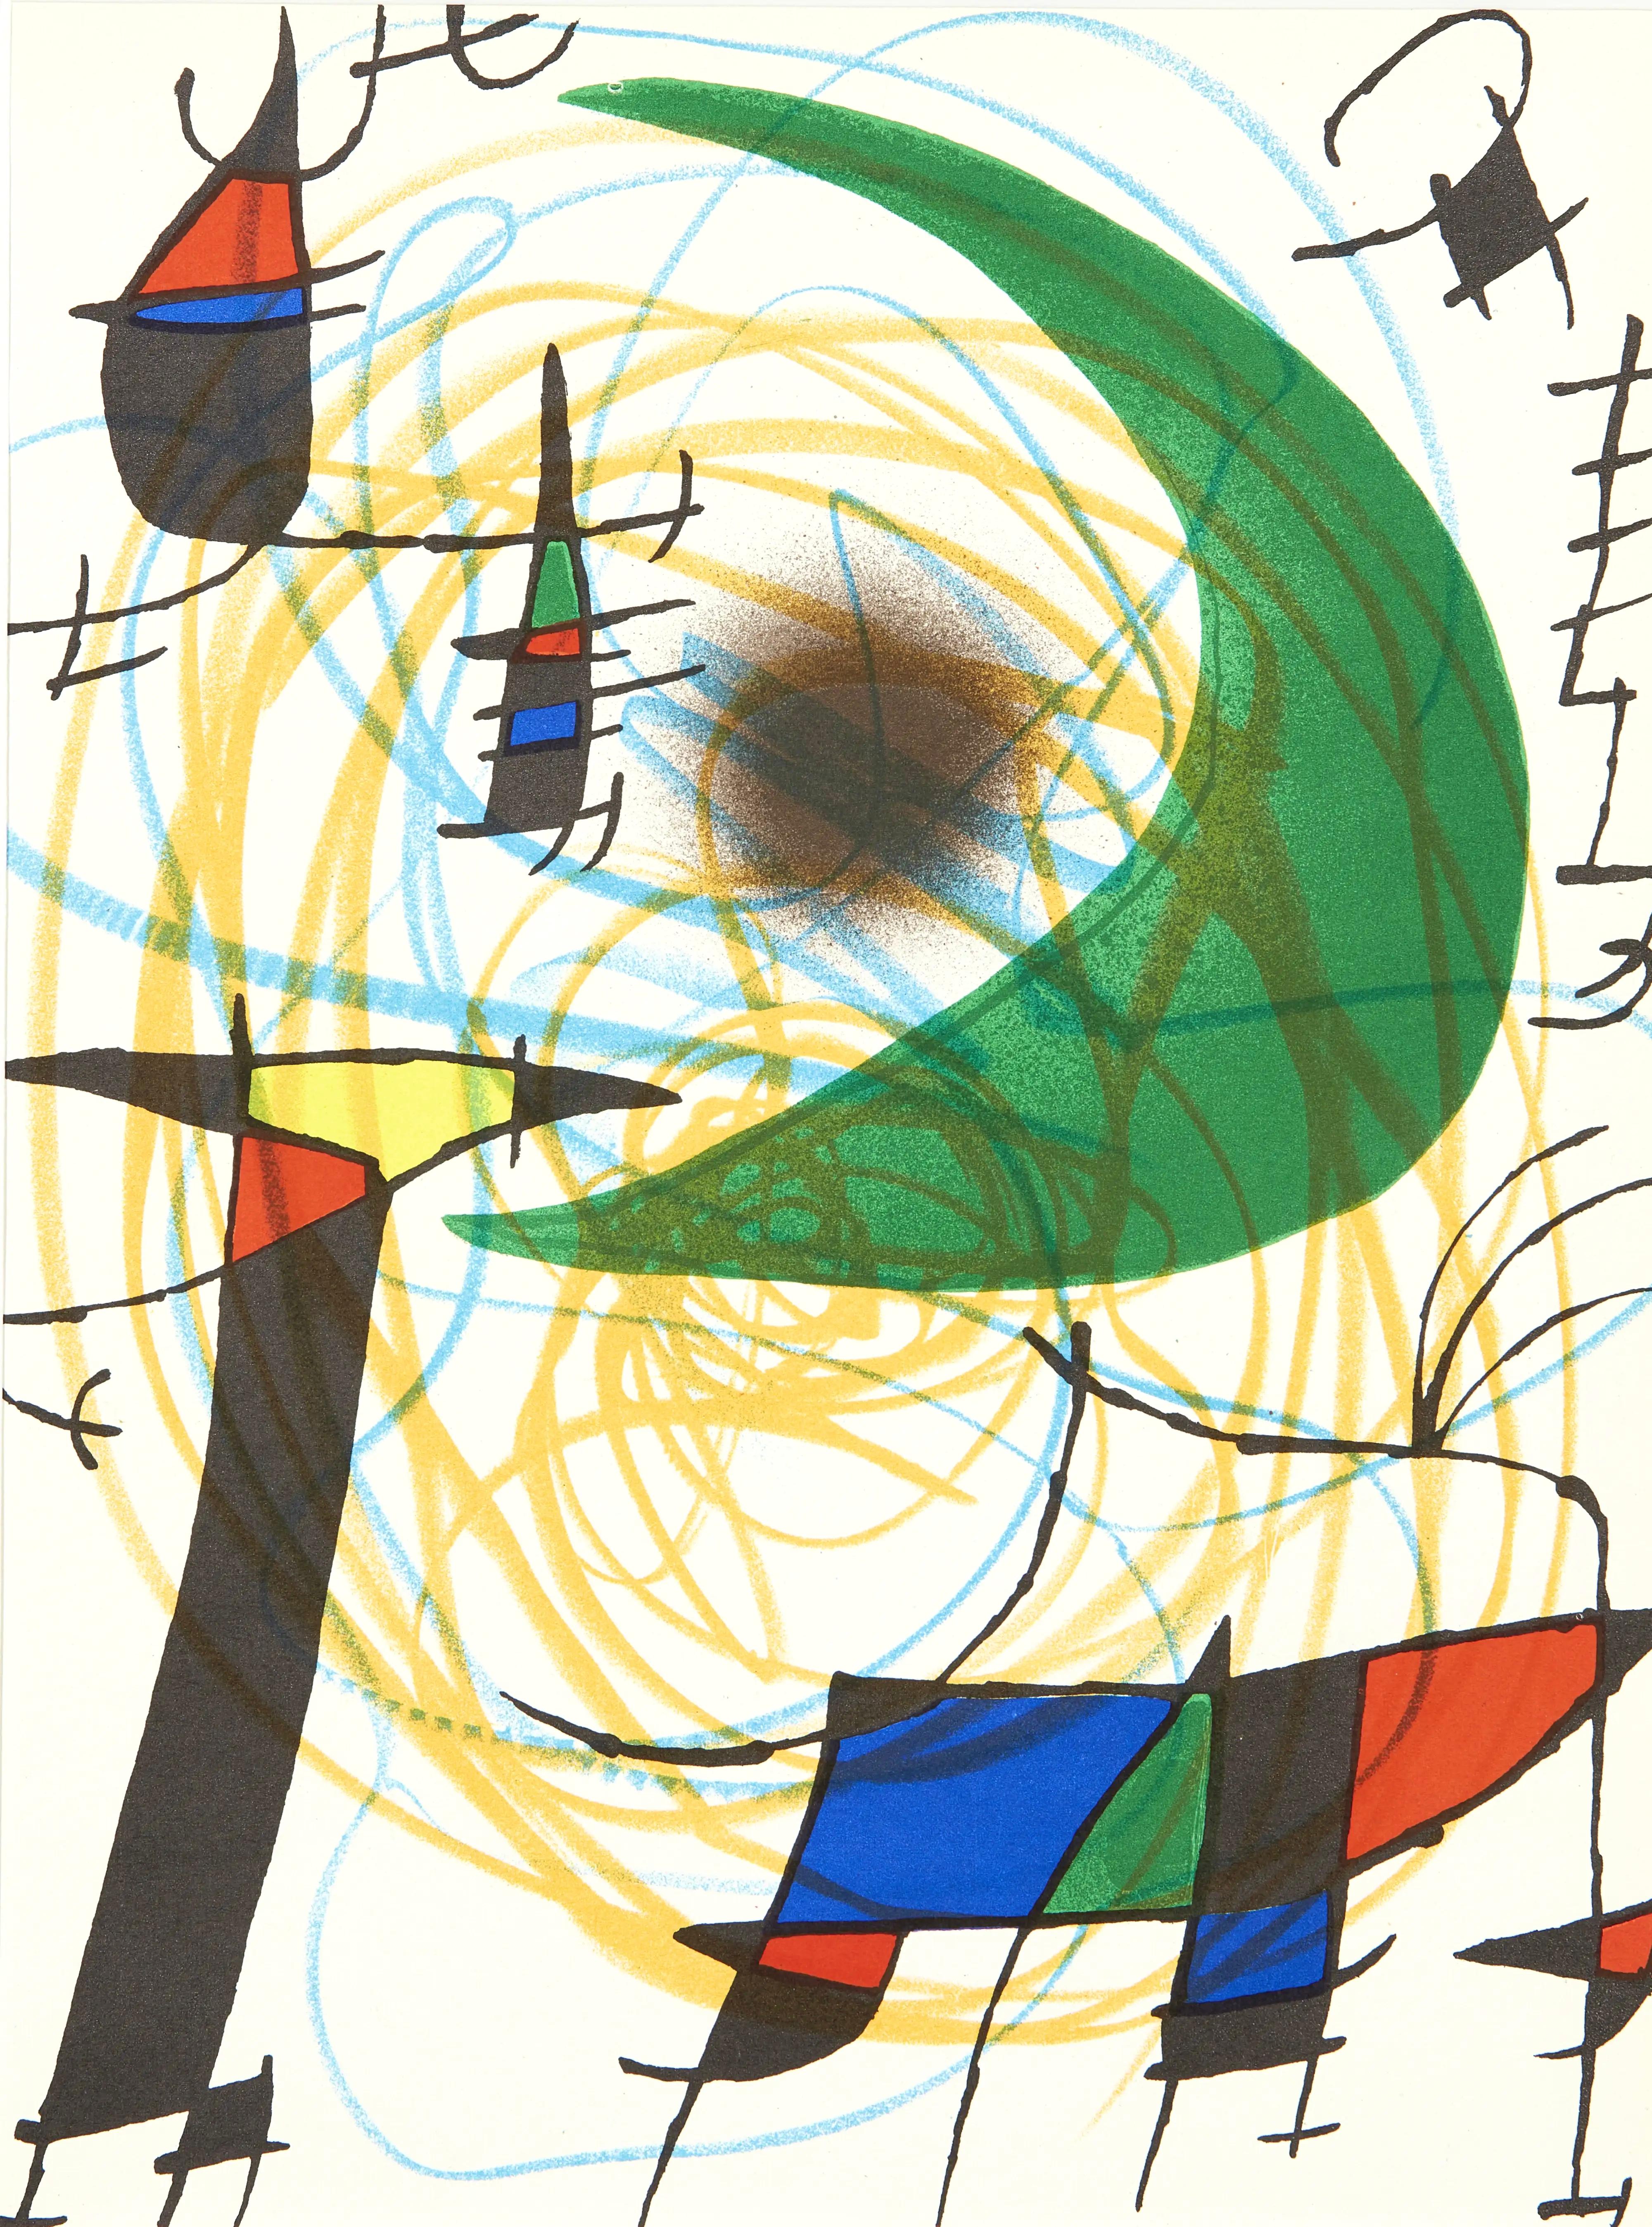 Joan Miró Abstract Print - Miró, Litógrafia original V (Cramer 160; Mourlot 861), Litógrafo I (after)